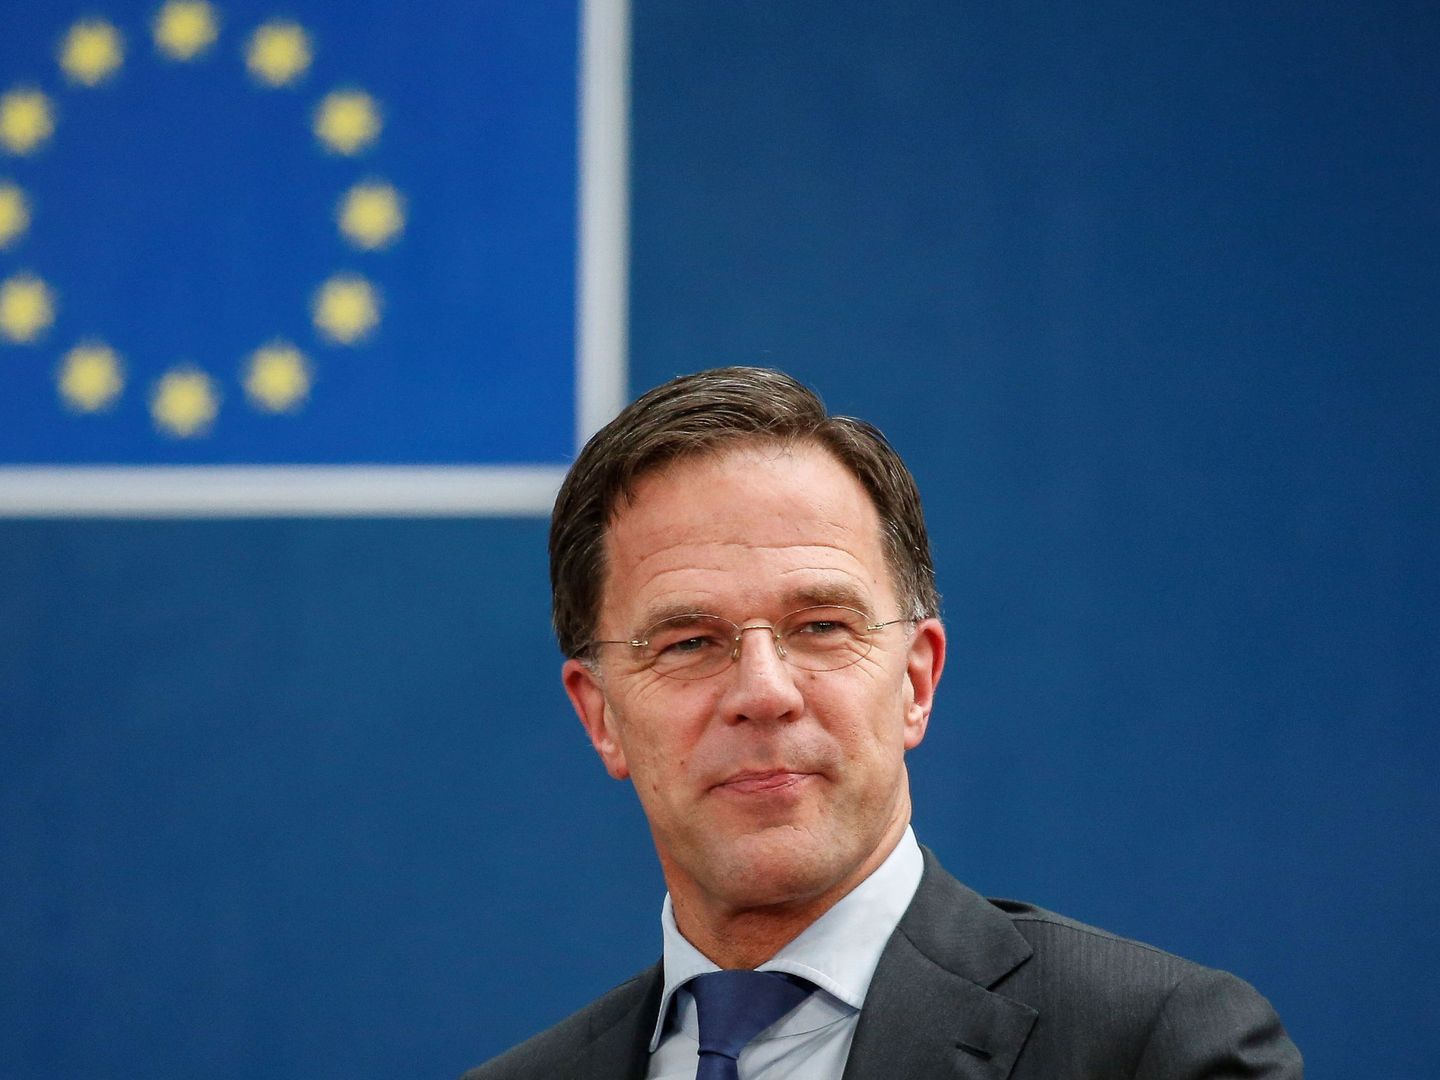 Mark Rutte, primer ministro de Países Bajos, a su llegada a un Consejo Europeo. (Reuters)